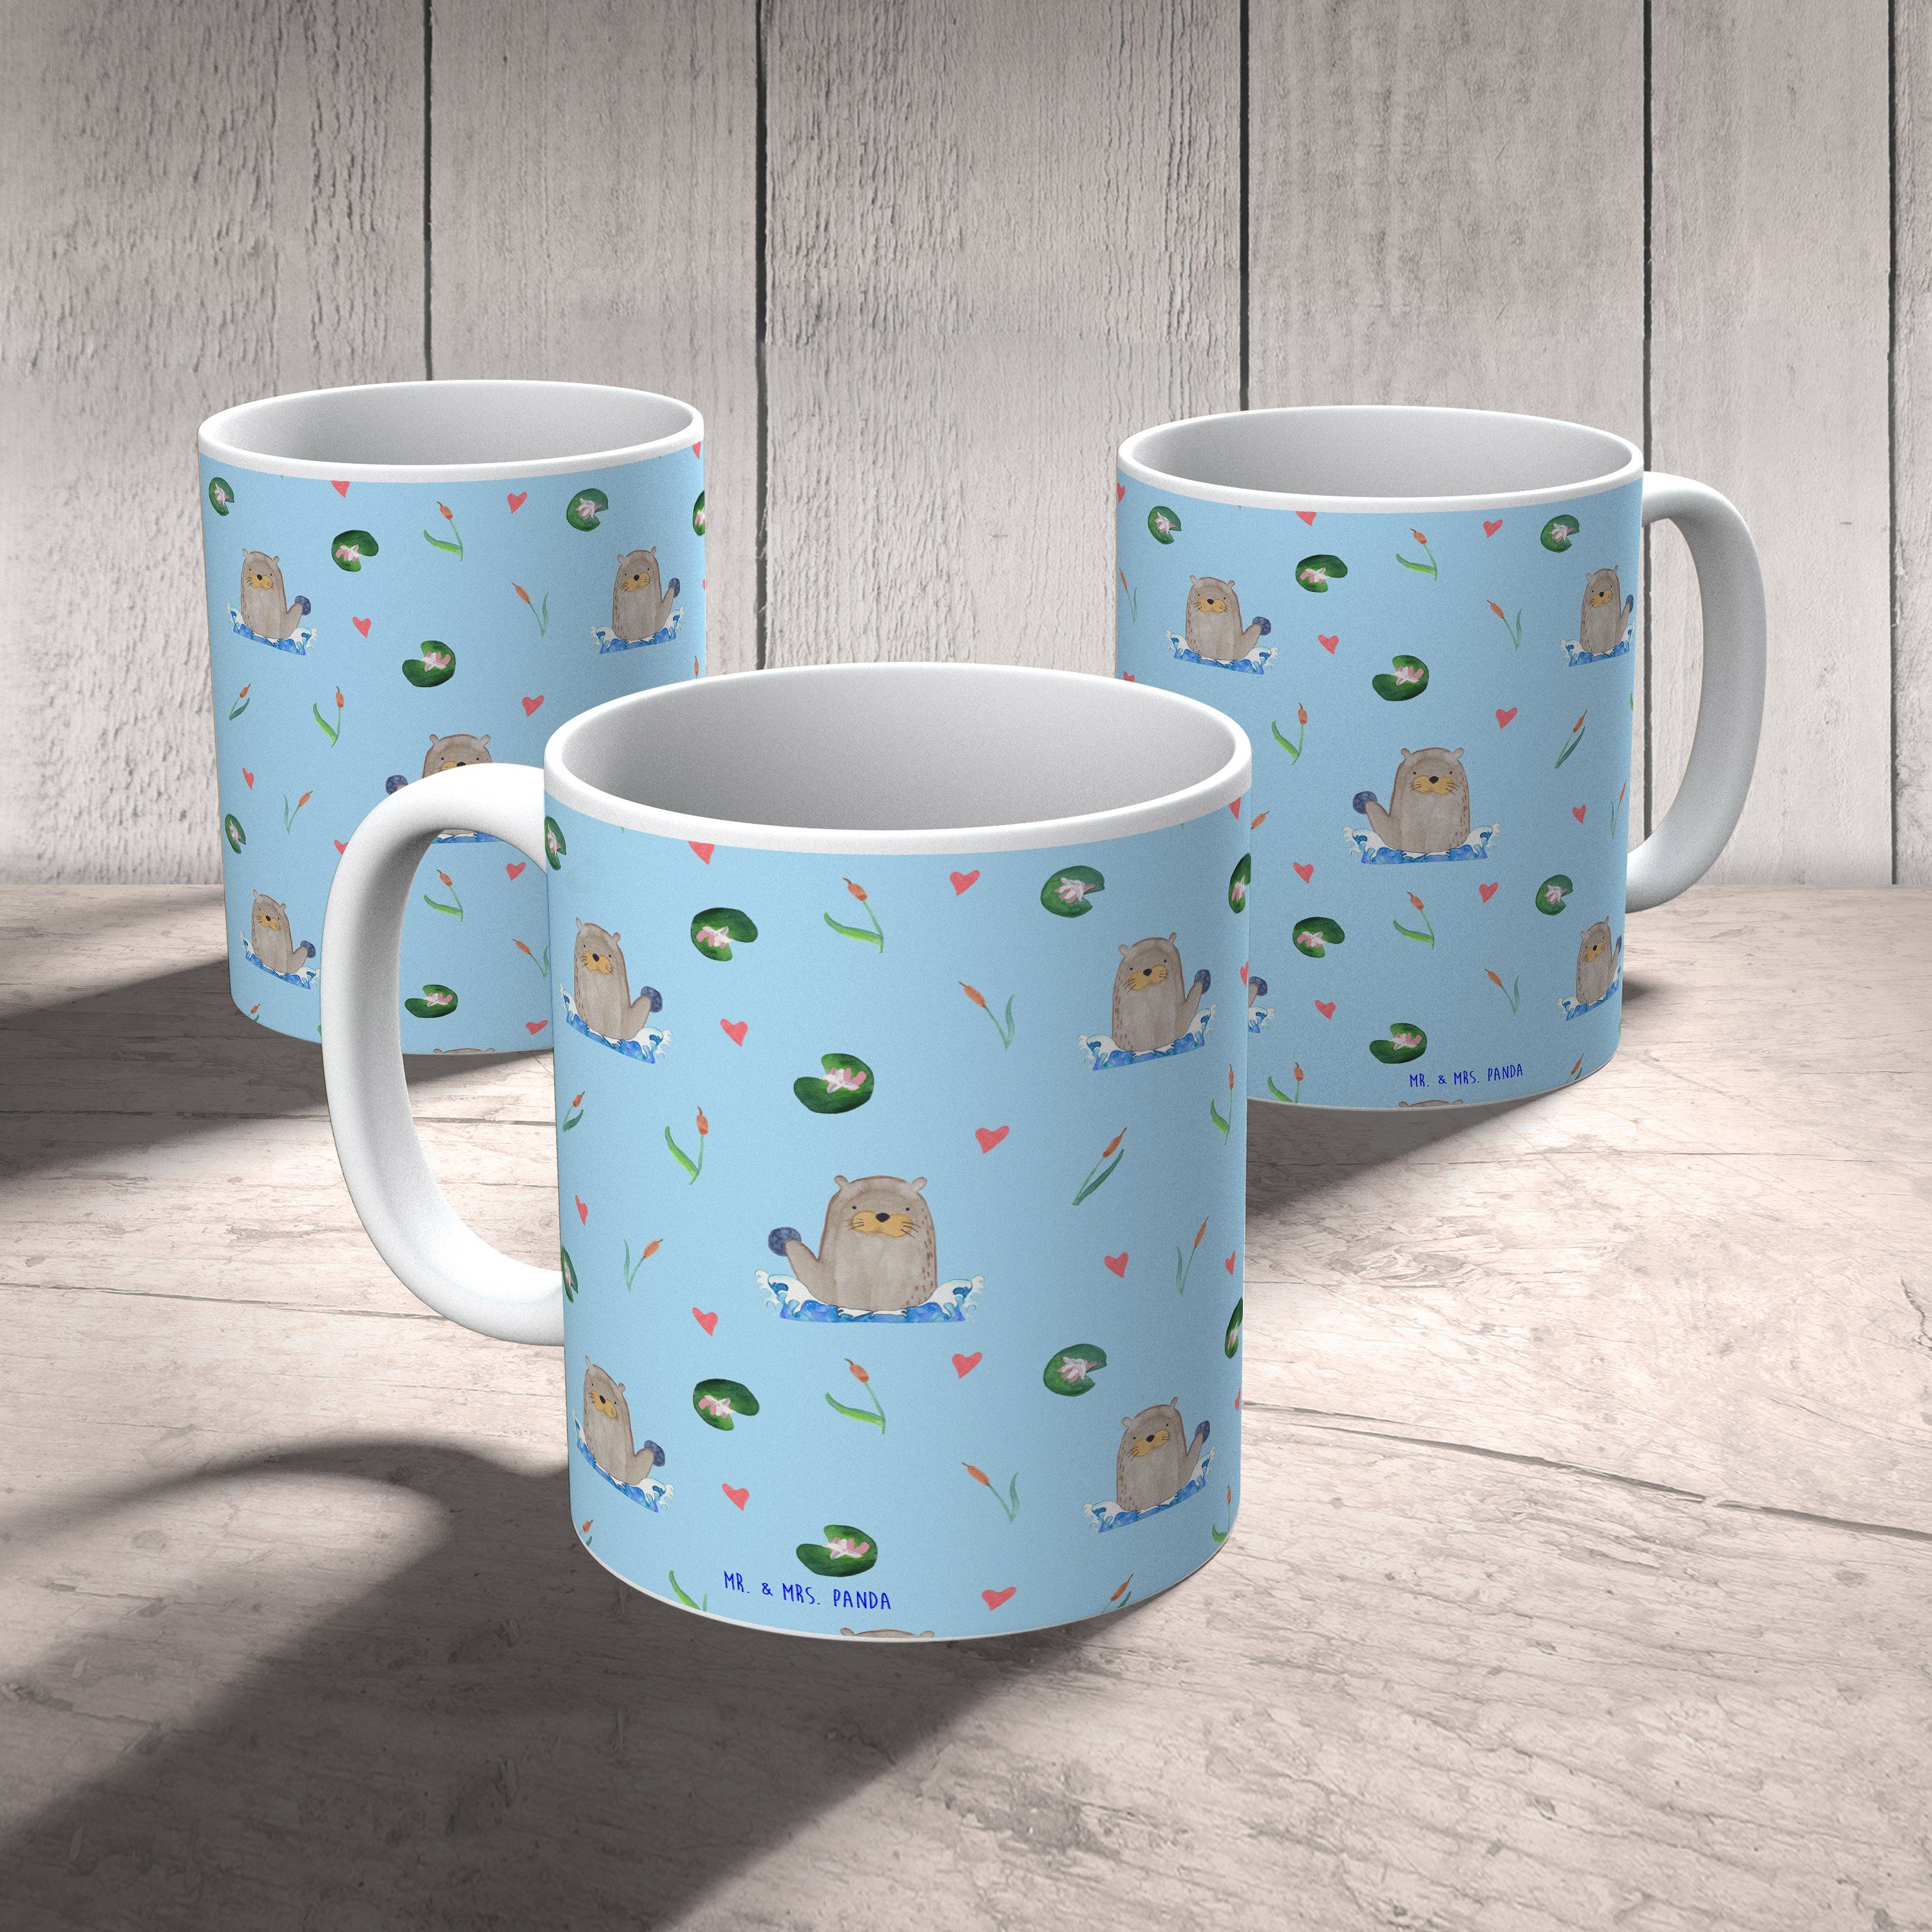 Mr. & Mrs. Panda Tasse Otter mit Stein - Blau - Geschenk, Geschenk Tasse, Seeotter, Kaffeebe, Keramik